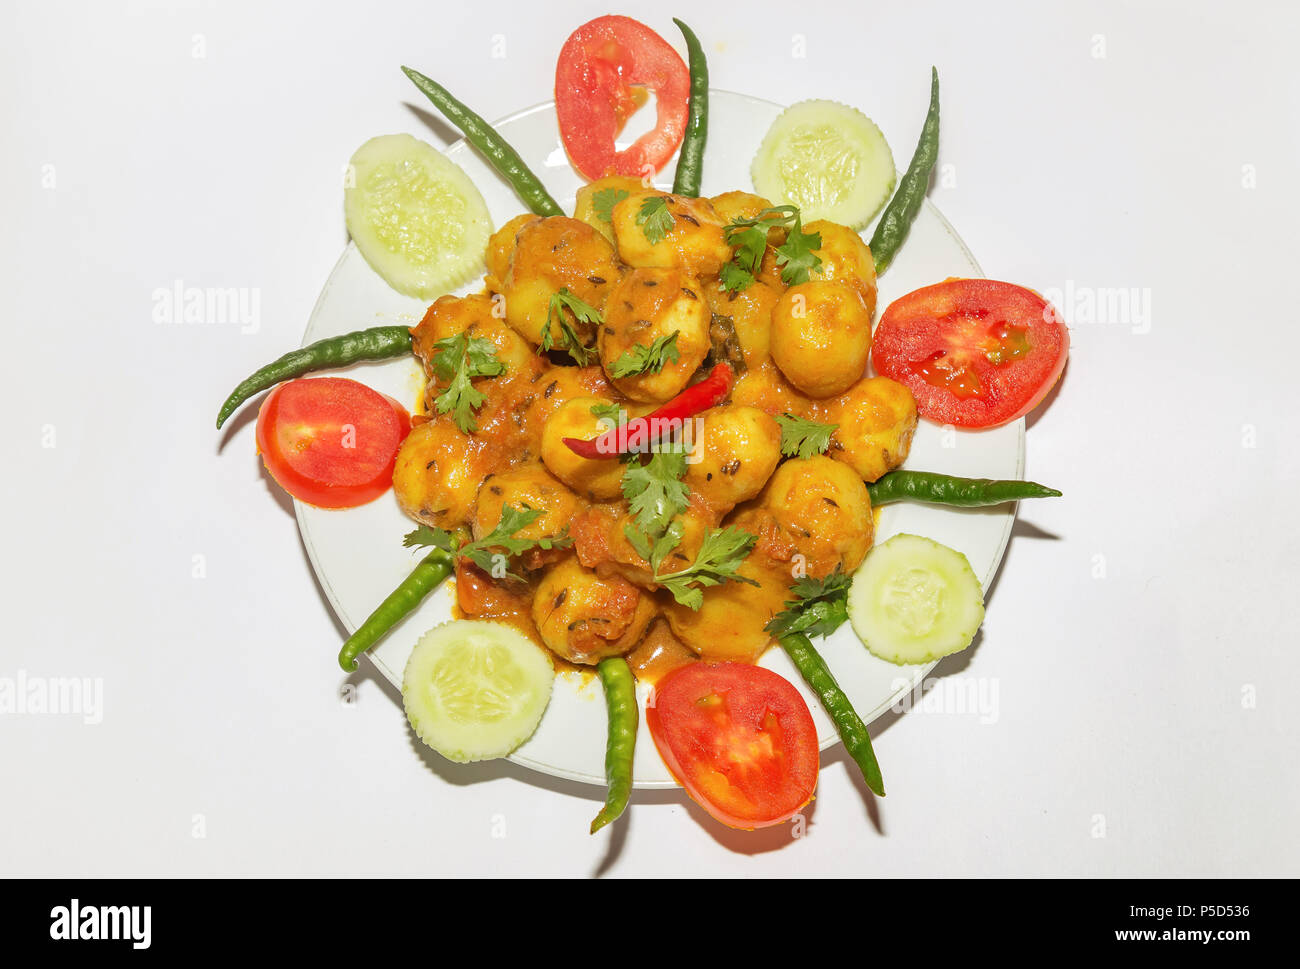 Scharfe Indische vegetarische Speisen zubereitet mit kleinen Kartoffeln im Volksmund bekannt als Dum Aloo mit Gurken, Tomaten und grüne Chilischote garniert. Stockfoto